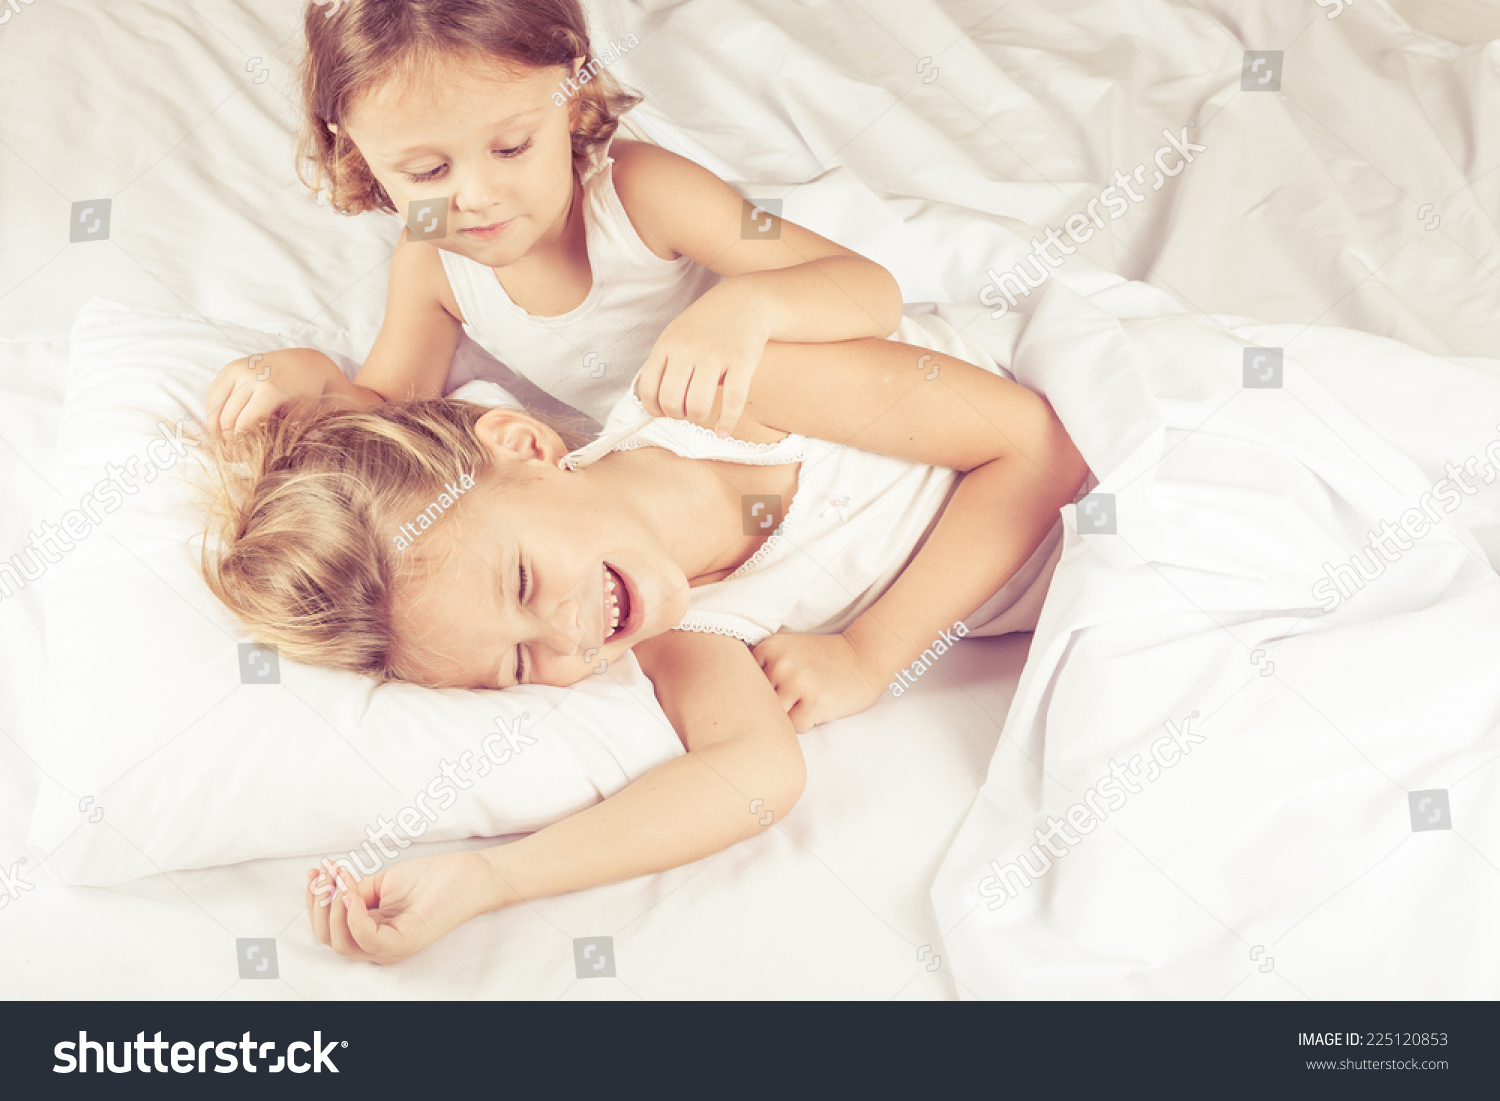 Сестра пришла брату кровать. Братик и сестричка в кровати. Сестрички в постели. С сестренкой в постели. Кровать для сестренок.